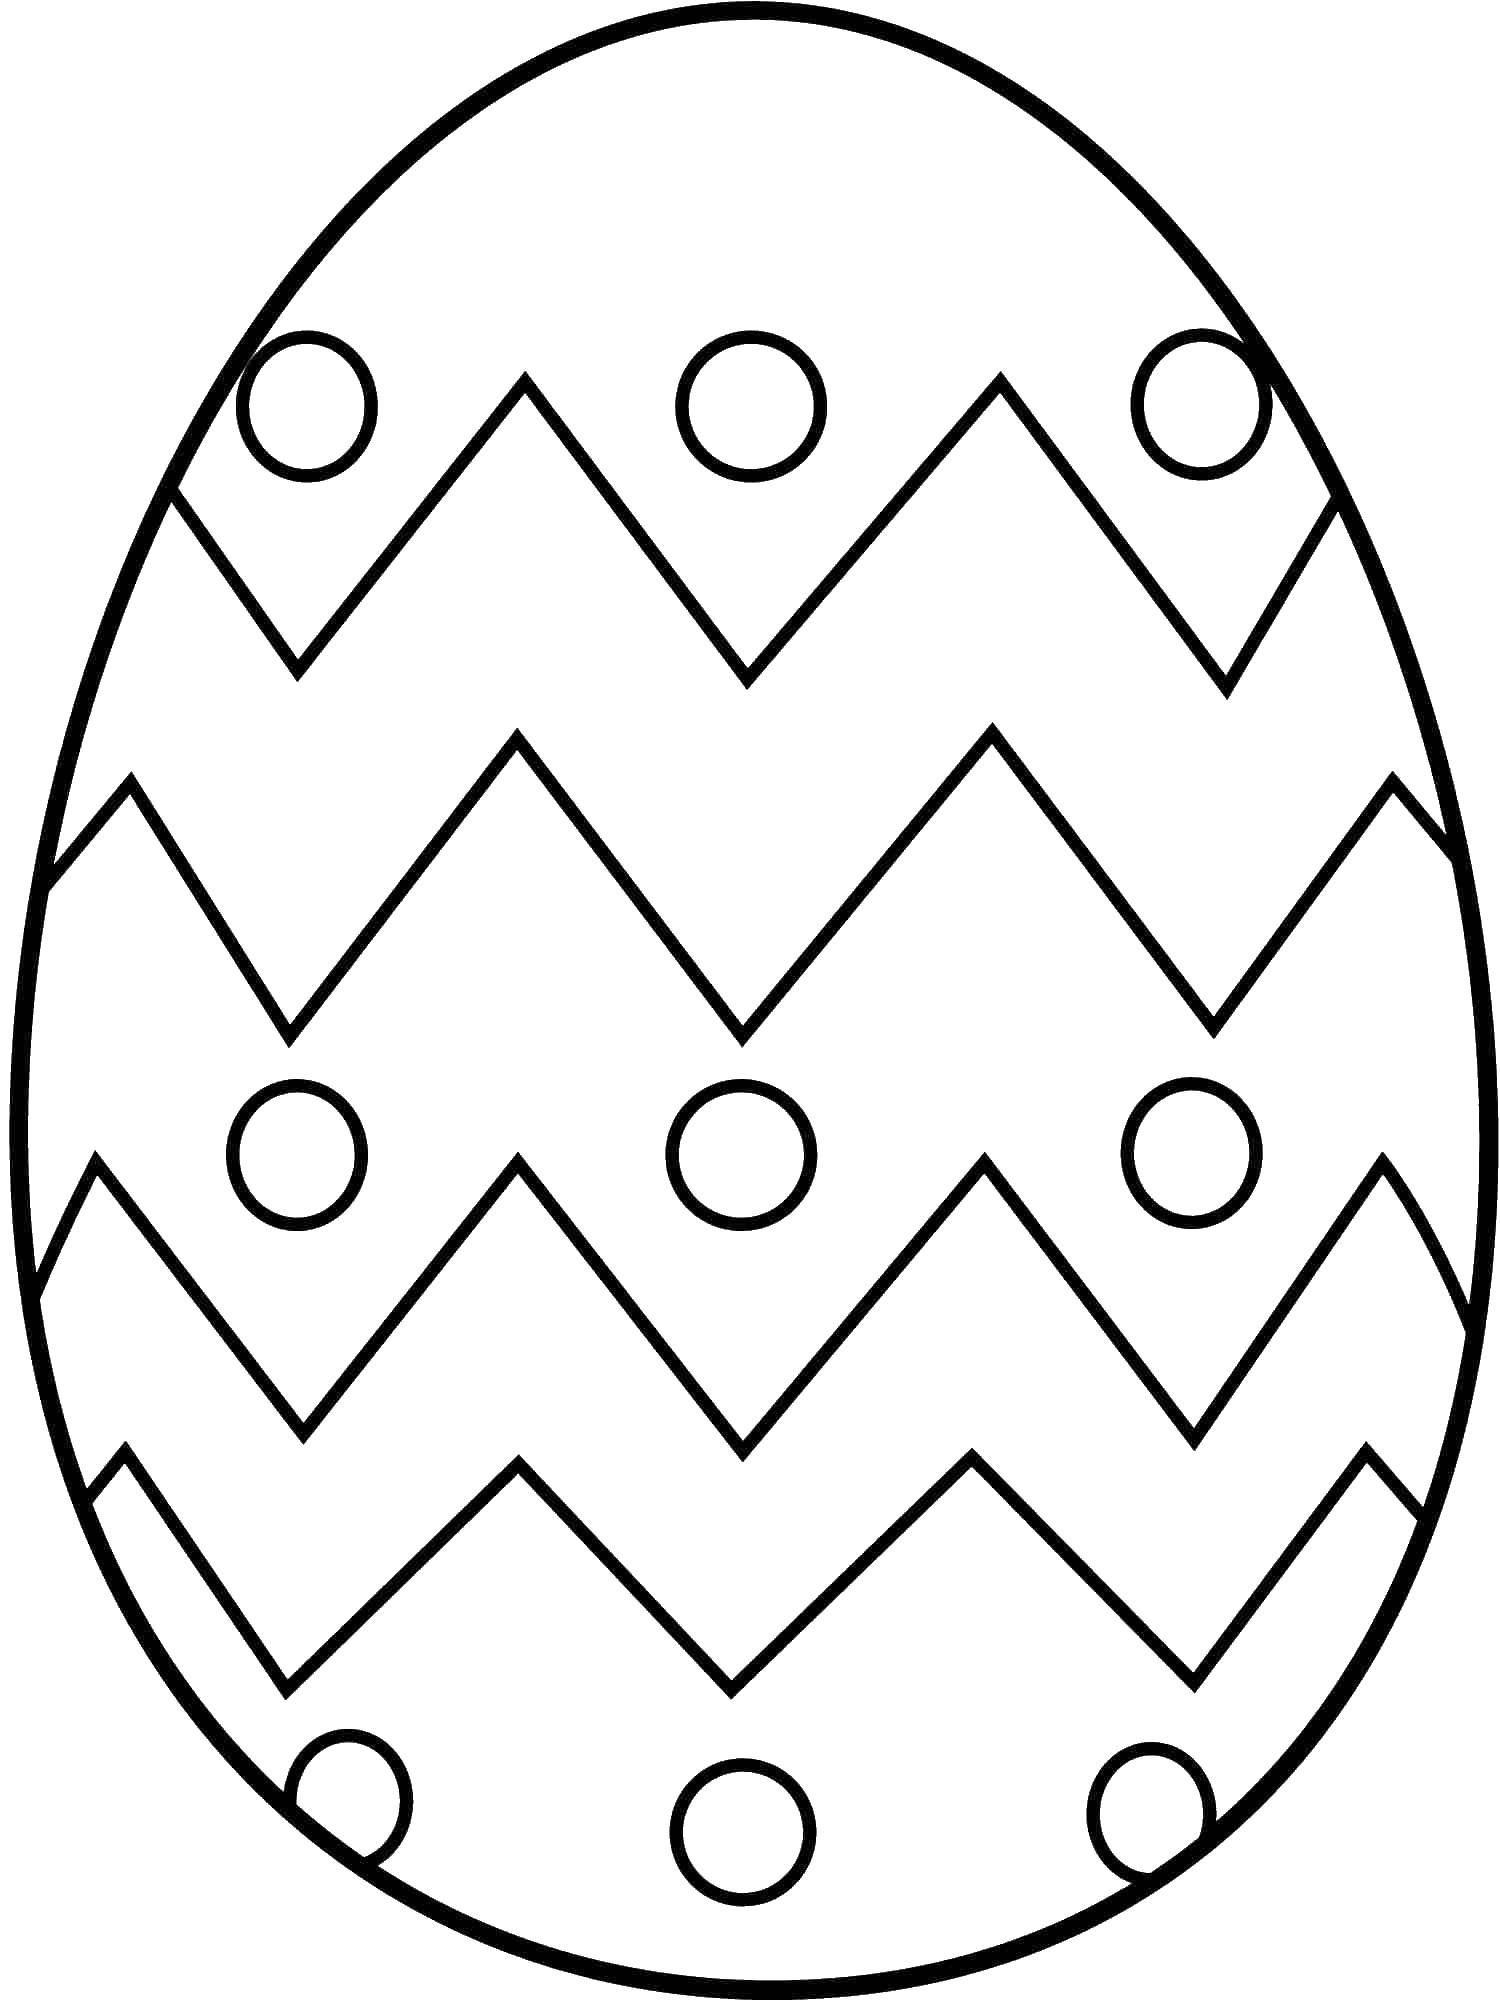 Название: Раскраска Яйцо с кружочками и ломанными линиями. Категория: Узоры для раскрашивания яиц. Теги: яйца, узоры, линии.